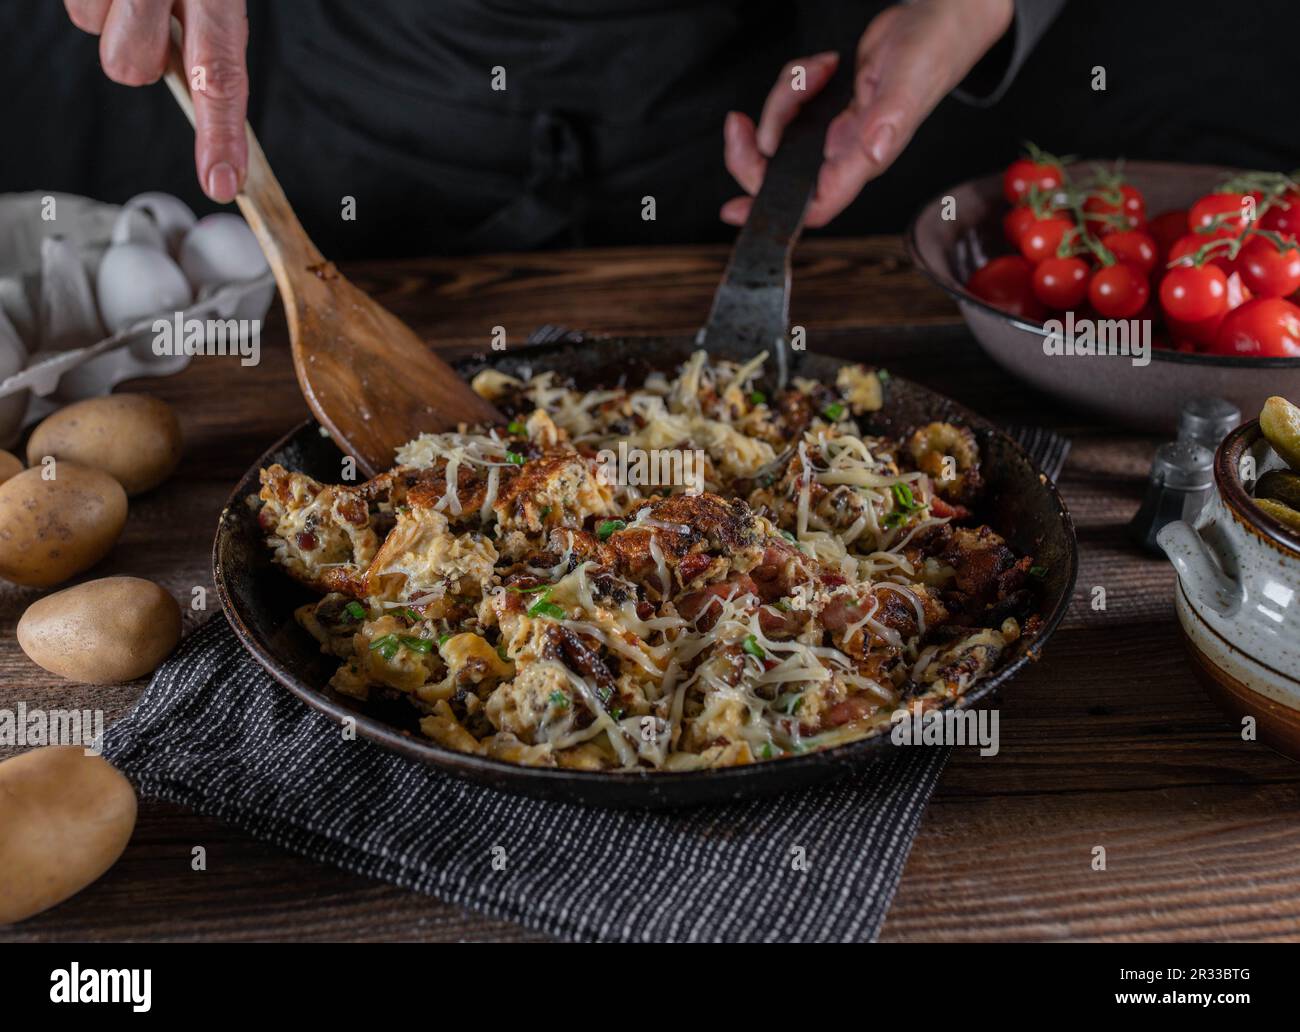 Bauernfrühstück mit Bratkartoffeln, Speck, Eiern, Schnittlauch und Käse. Serviert in einer rustikalen Eisenpfanne auf einem Holztisch. Stockfoto